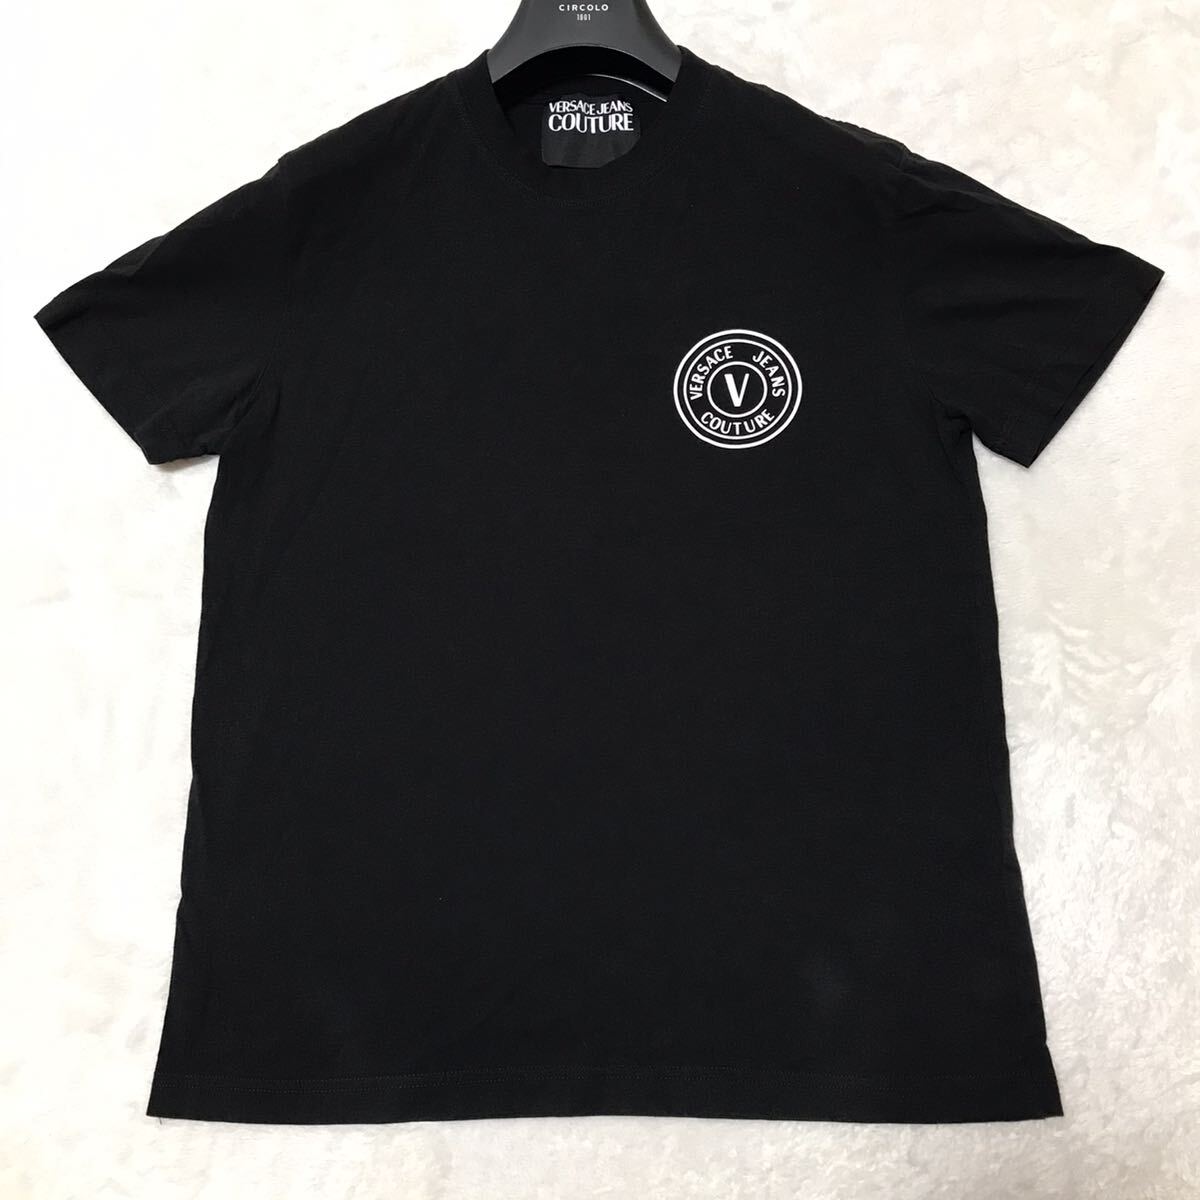 VERSACE JEANS COUTURE рубашка с коротким рукавом футболка размер M черный / чёрный Logo мужской Versace джинсы kchu-ru cut and sewn 